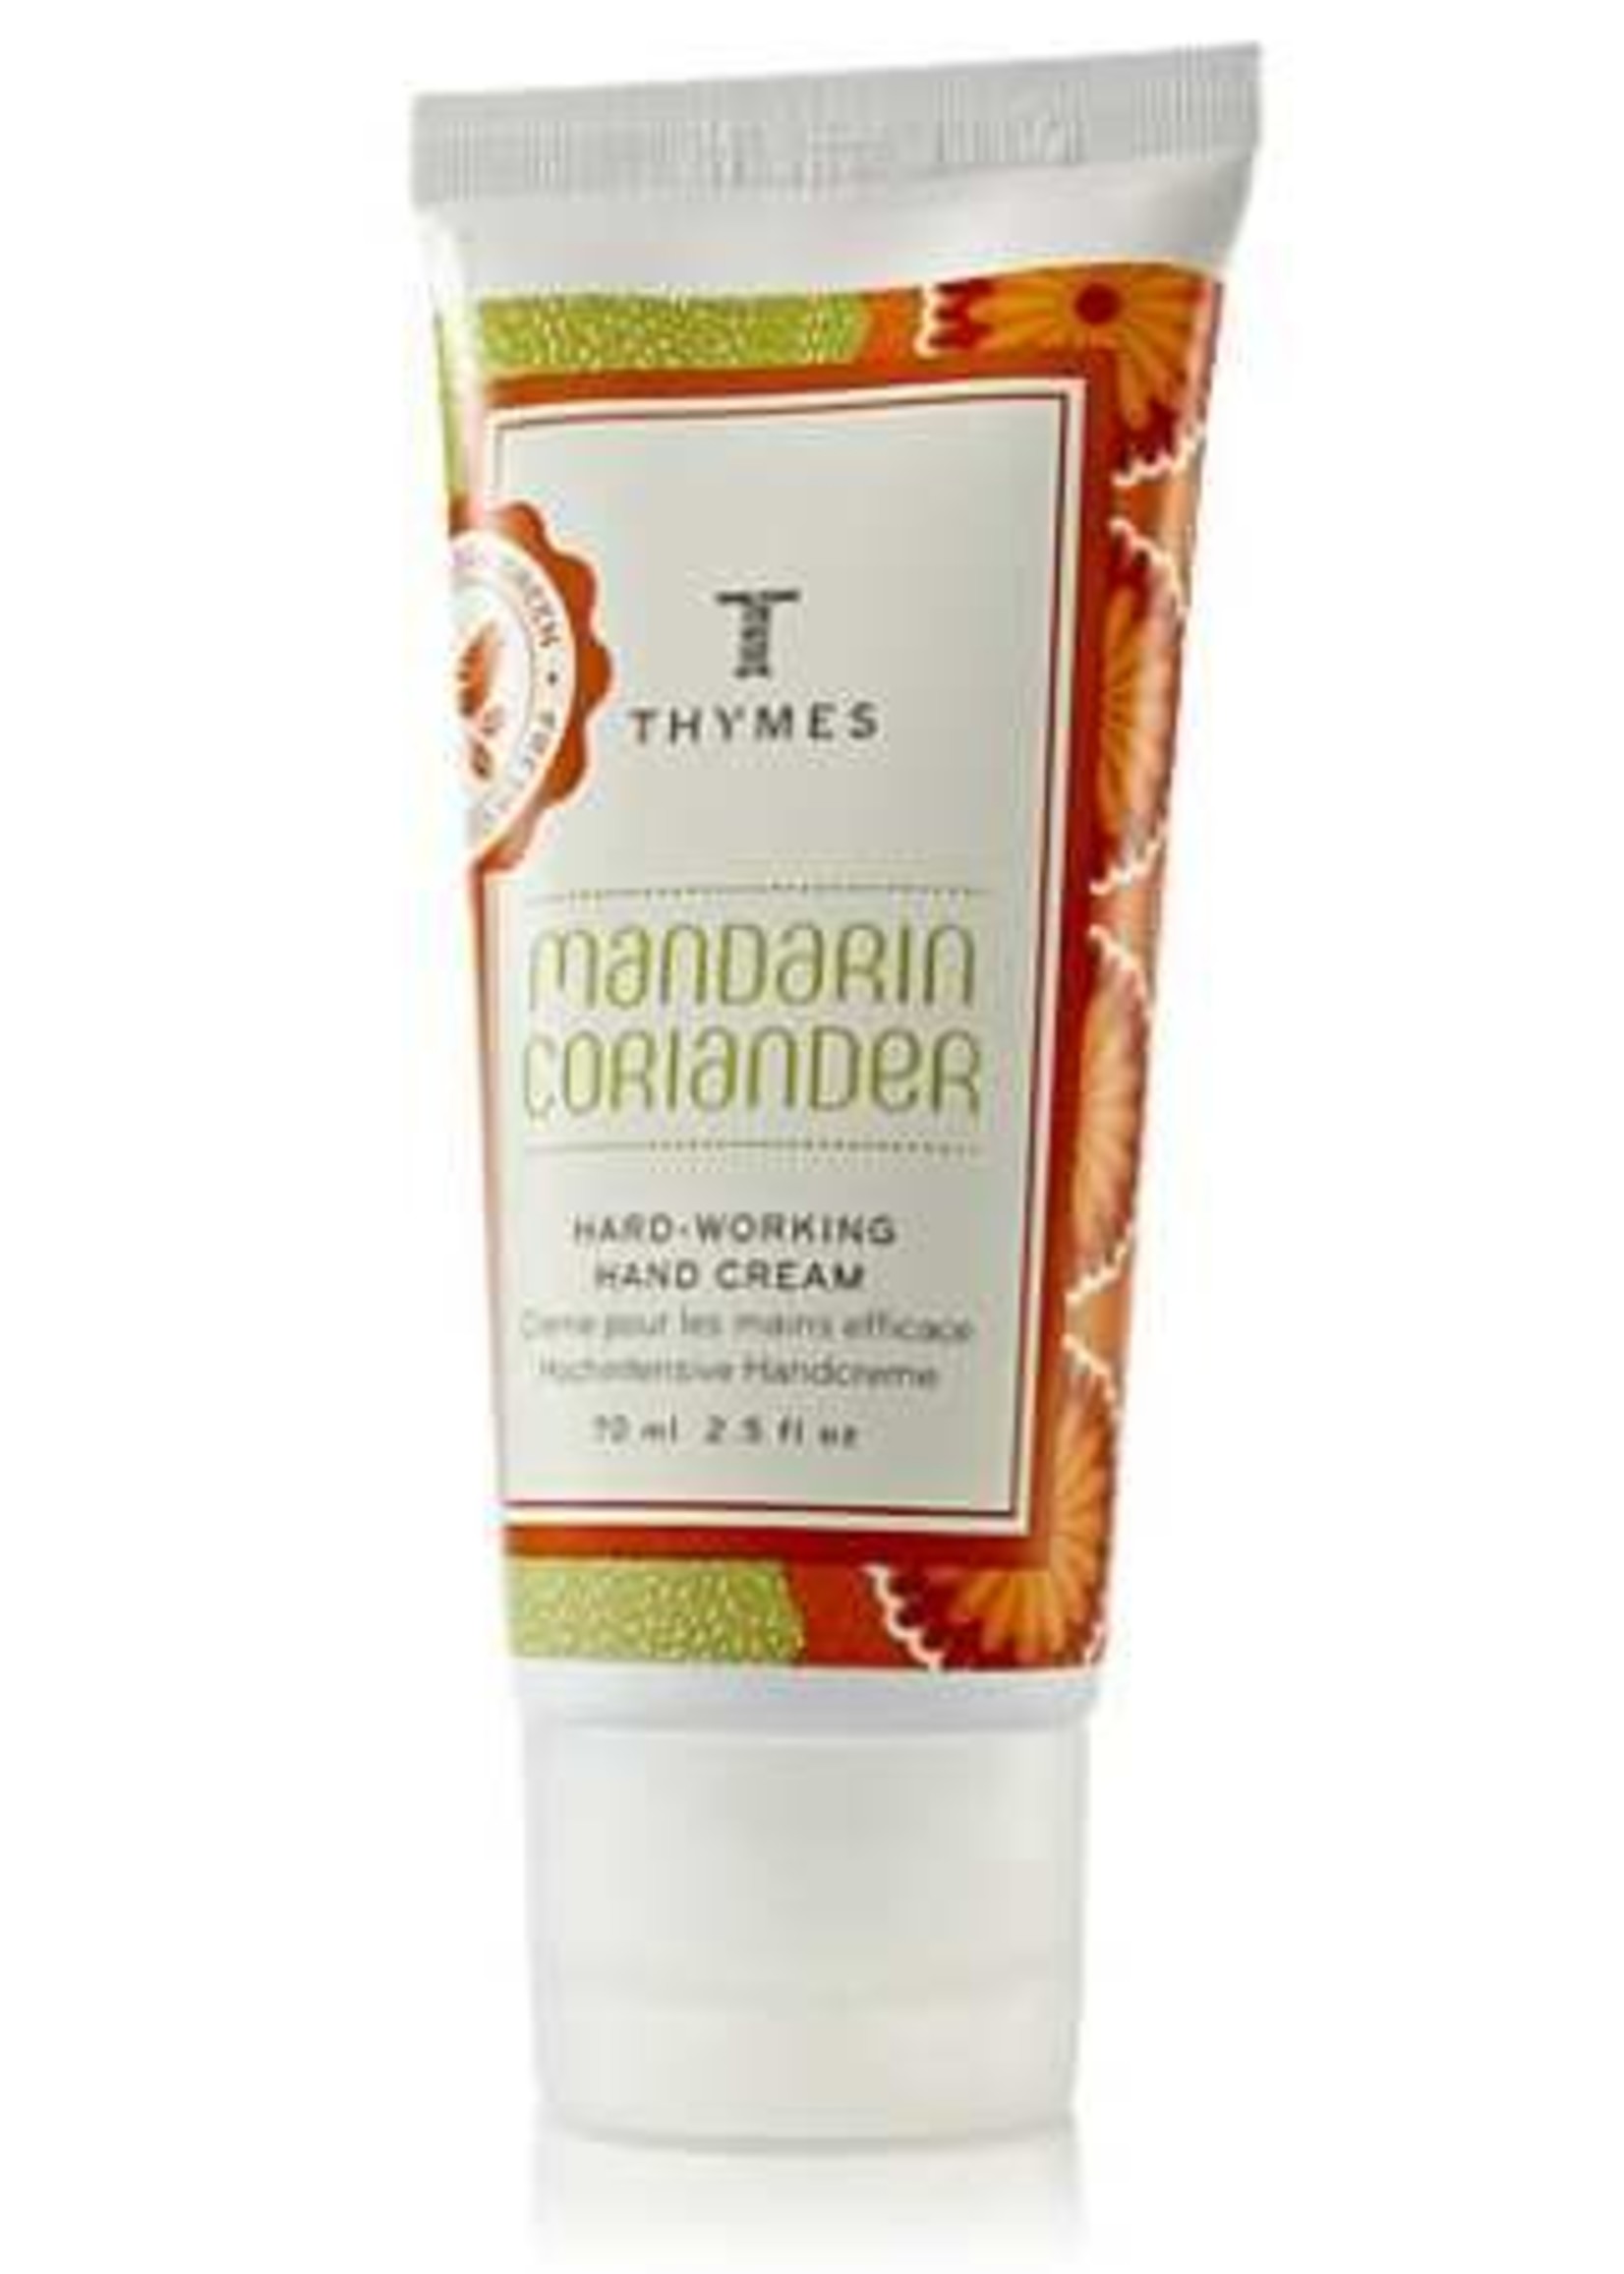 Thymes Mandarin Coriander Hand Cream